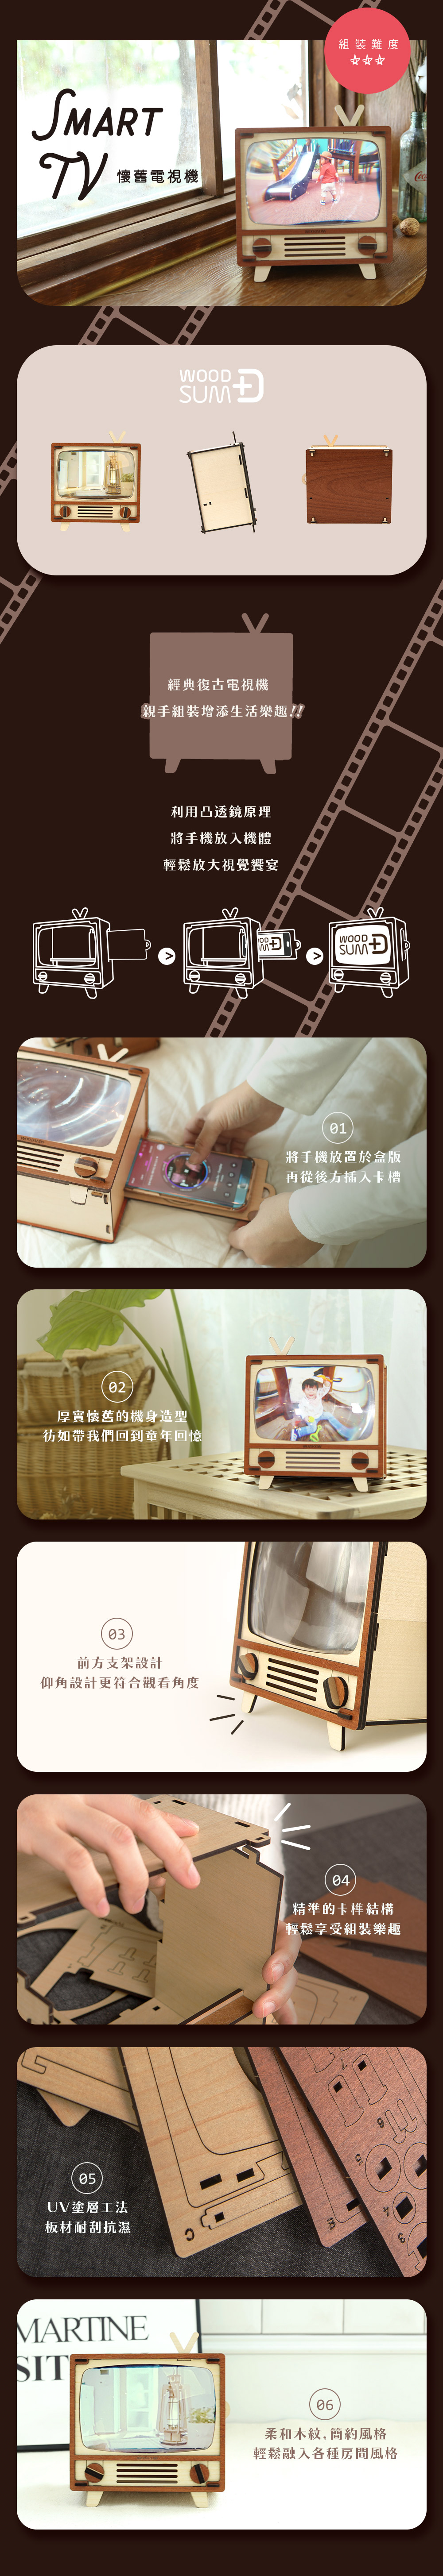 韓國 WOODSUM 輕手作。木製模型/懷舊電視機